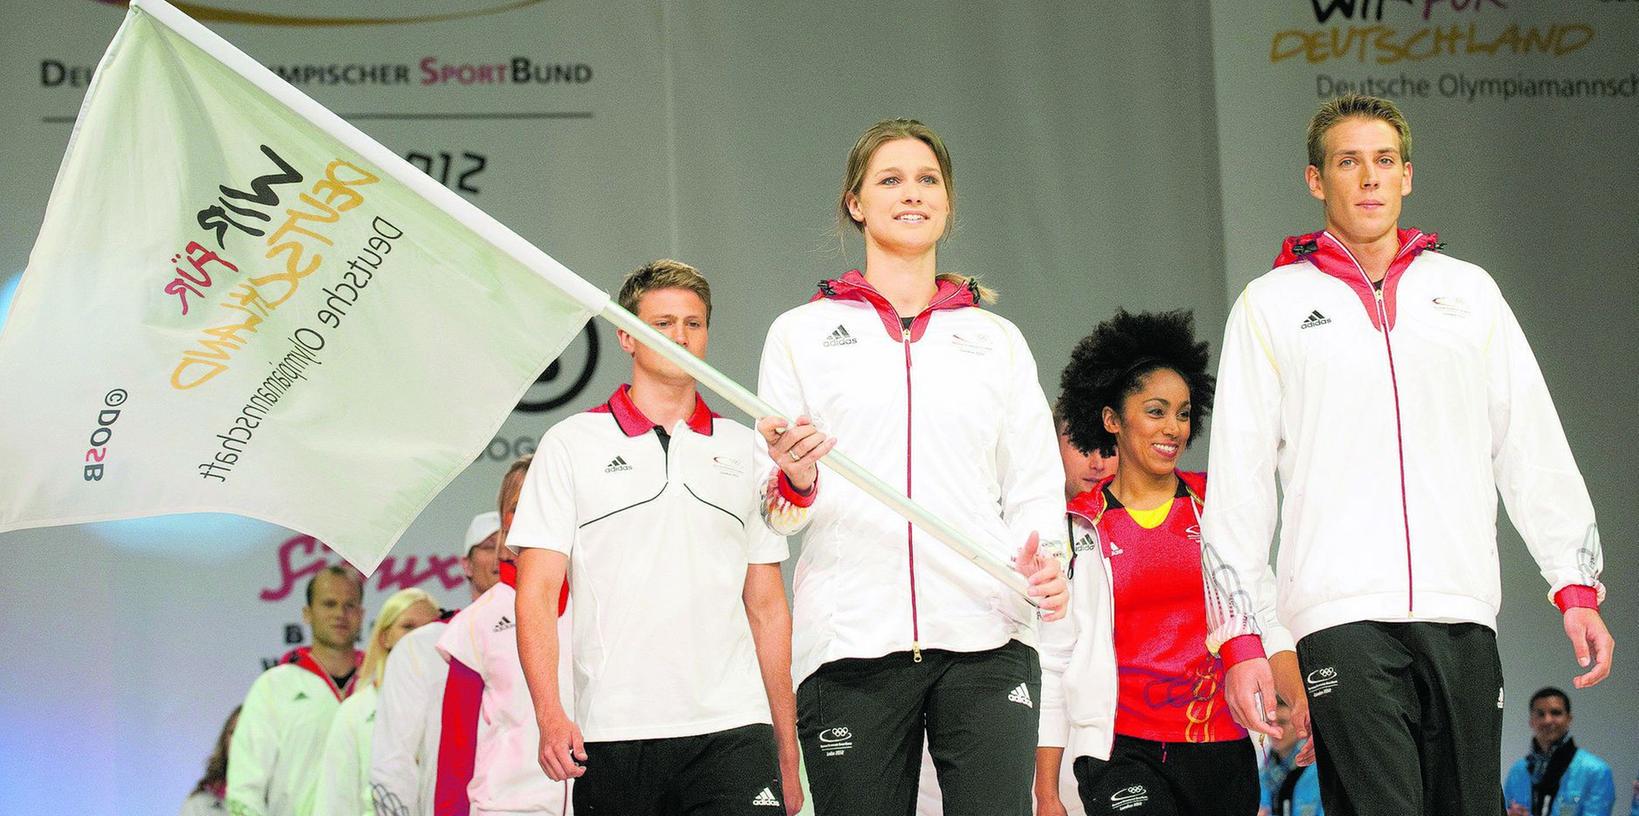 Fecht-Olympiasiegerin Britta Heidemann (mit Fahne) in adidas-Kleidung.